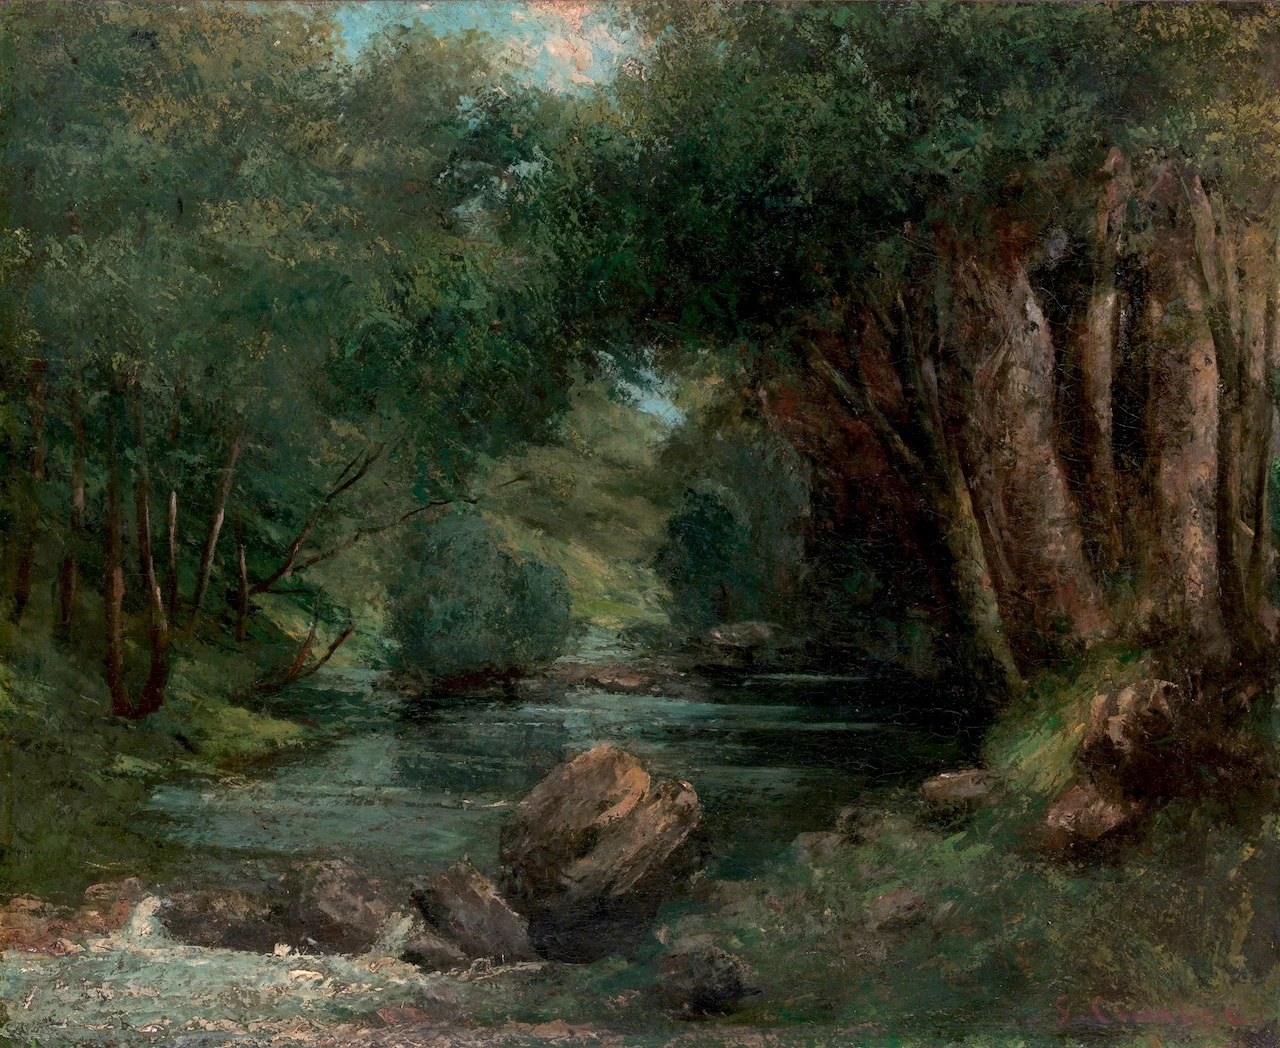  286-Un ruscello nella foresta-Metropolitan Museum of Art-New York 